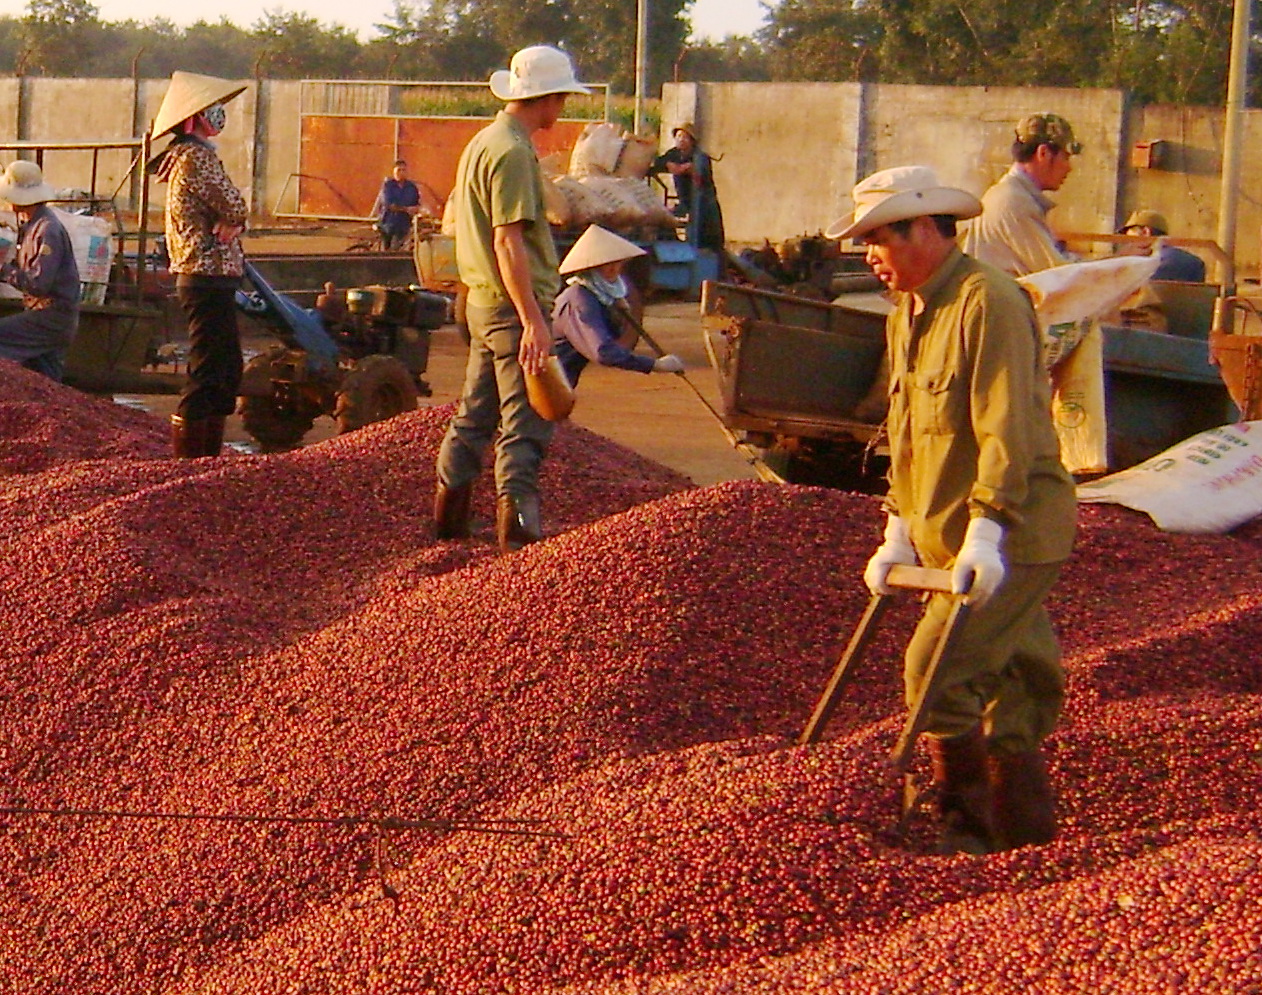 Tính đến hết năm 2022, Việt Nam đang là nước xuất khẩu cà phê Robusta lớn nhất, xuất khẩu cao su lớn thứ 3, nhập khẩu ngô lớn thứ 6 và nhập khẩu khô đậu tương lớn thứ 3 toàn cầu